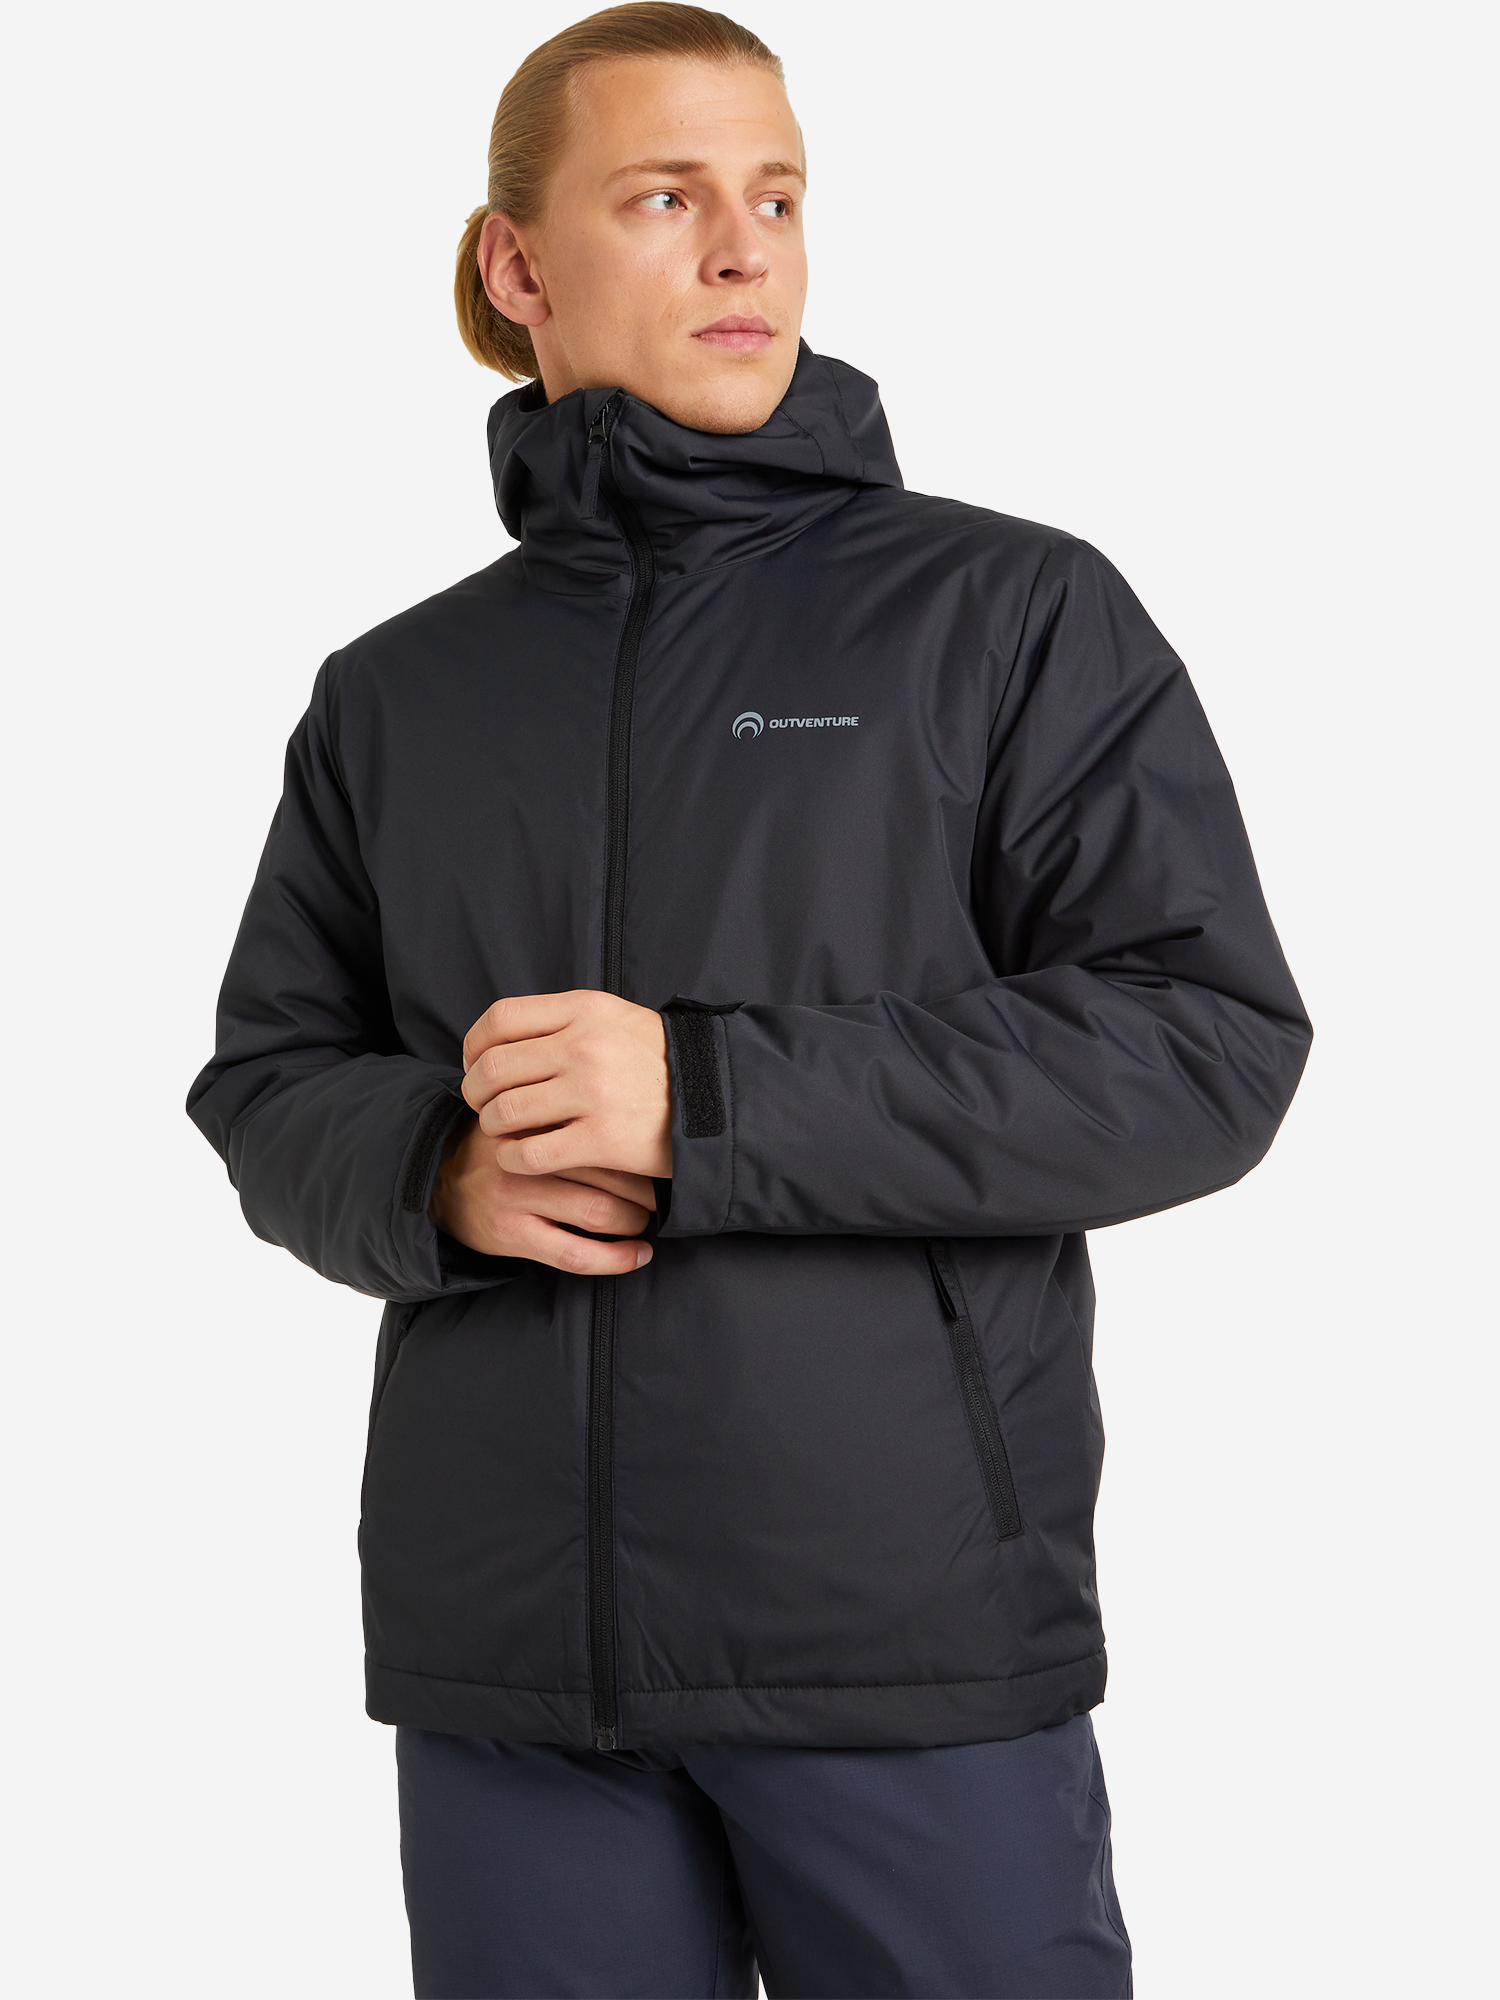 Куртка утепленная мужская Outventure, Черный куртка утепленная мужская outventure серый